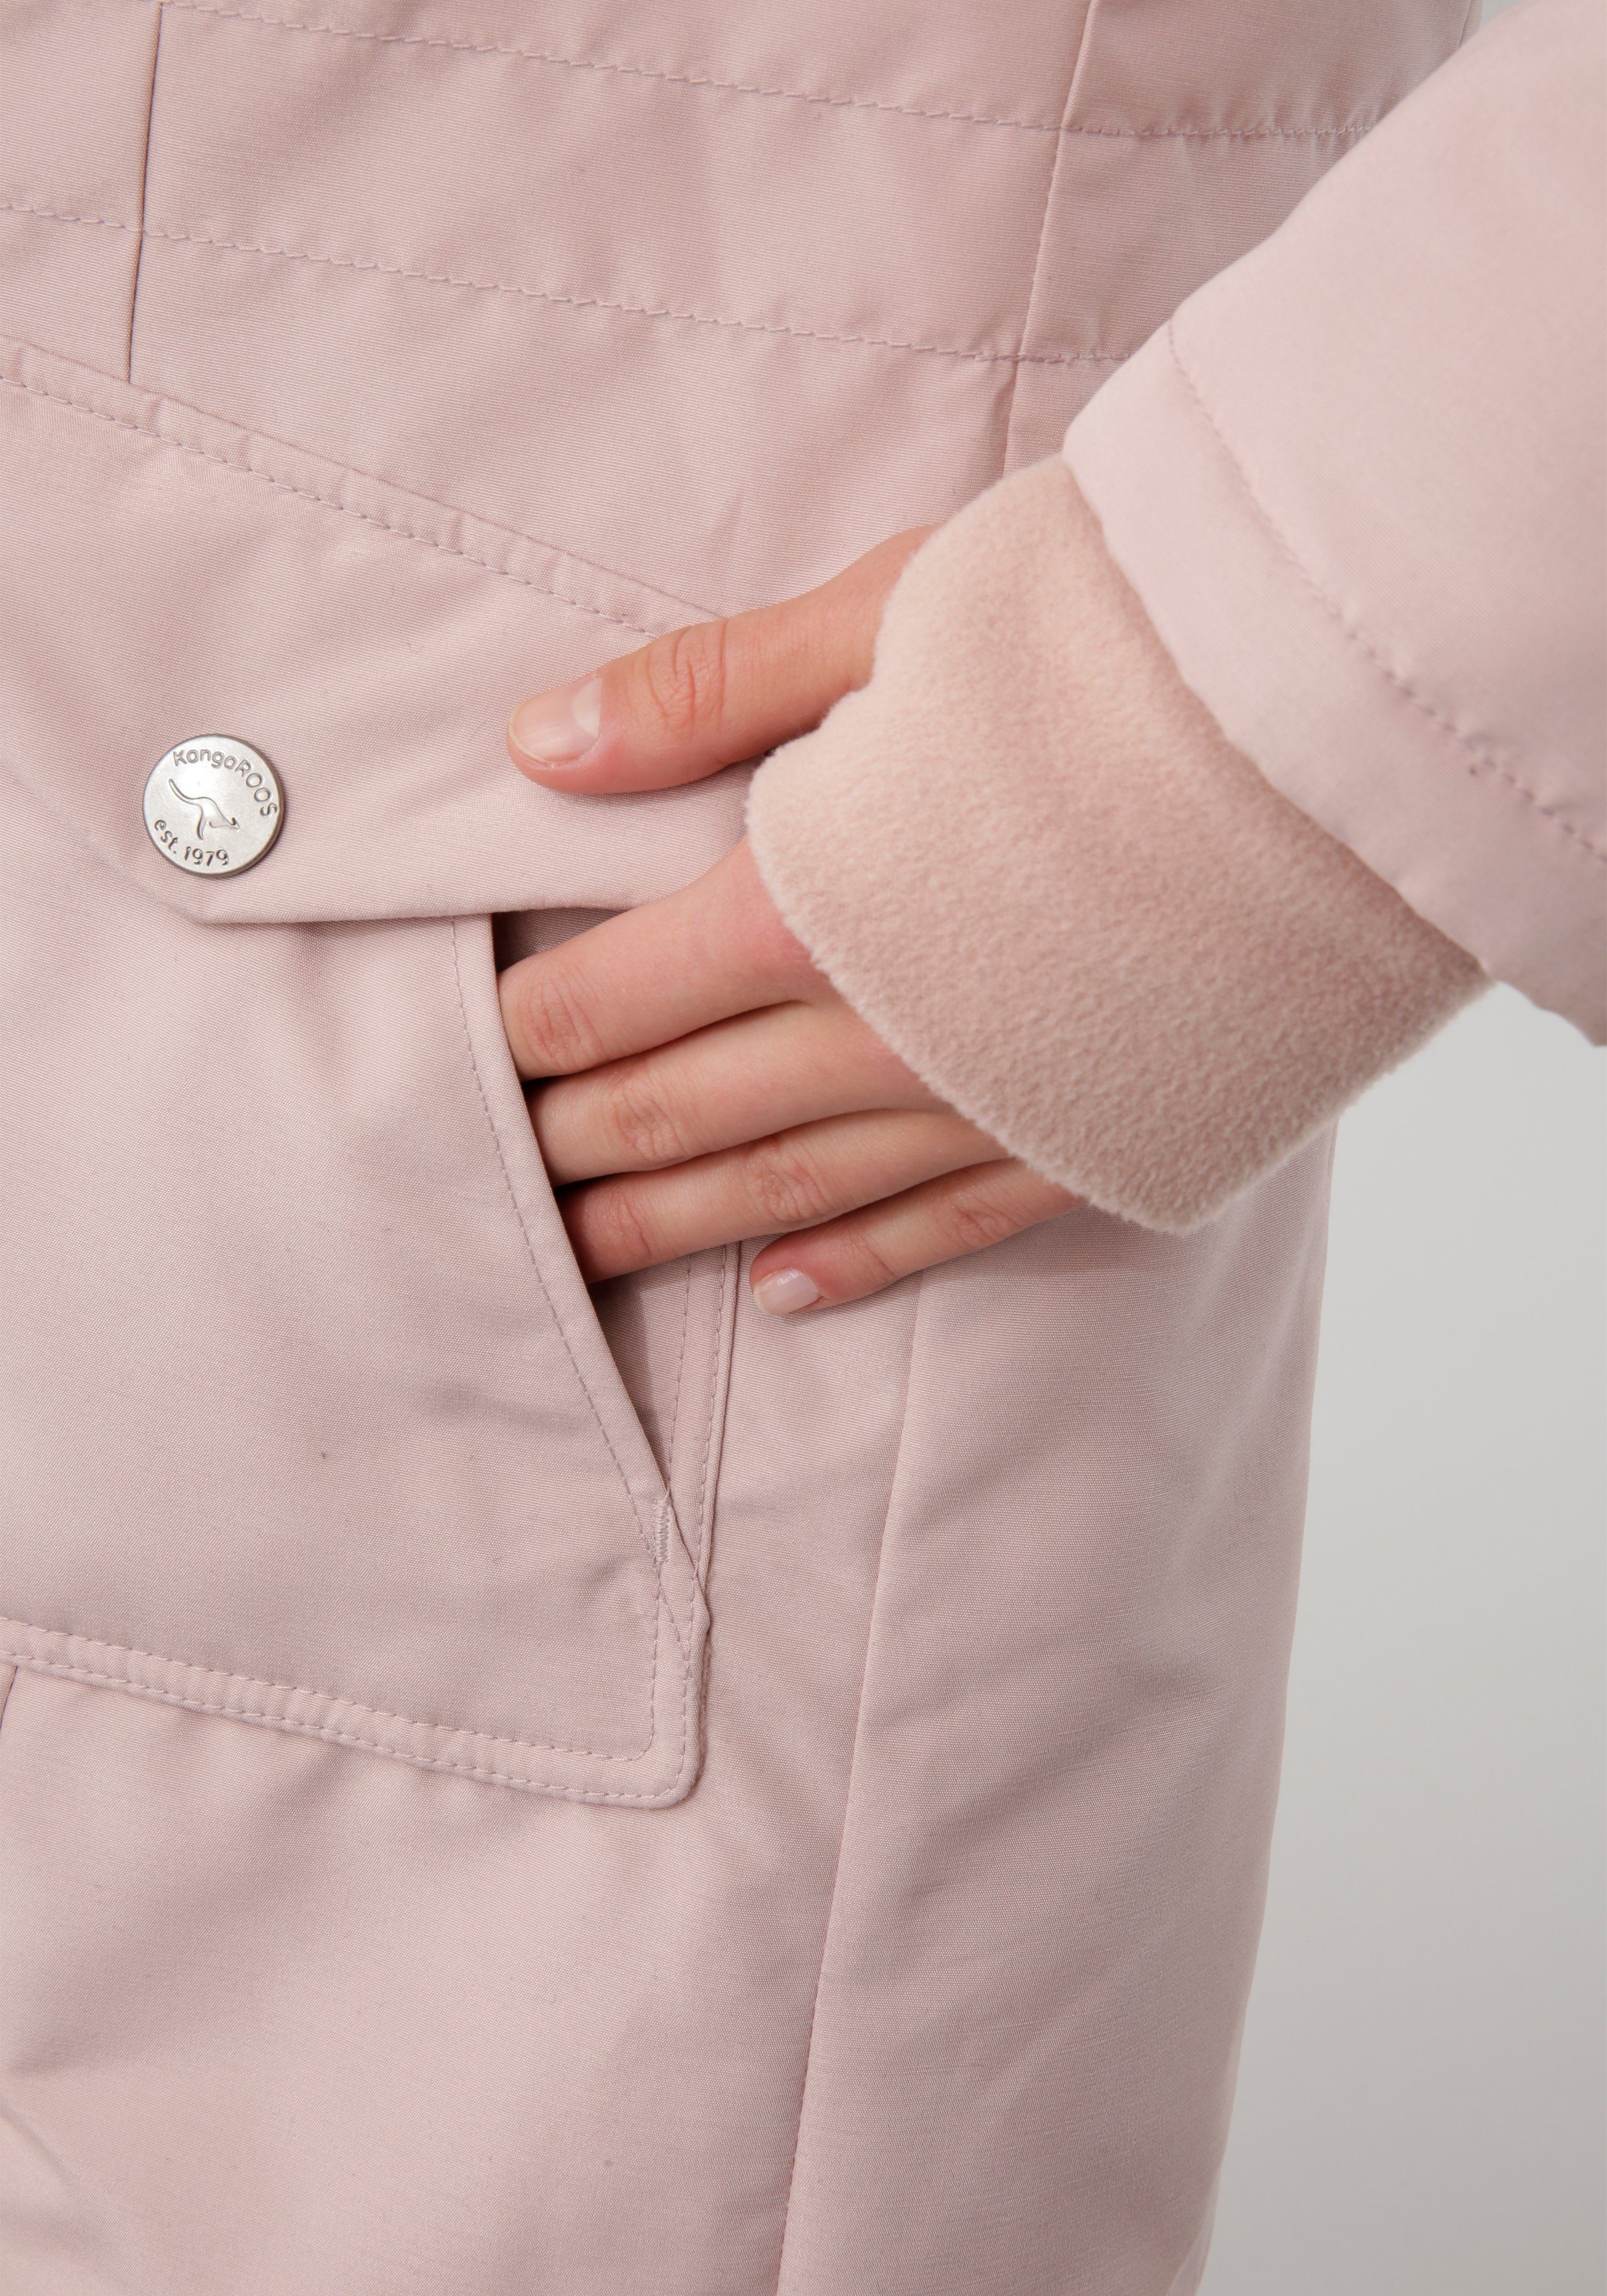 KangaROOS und Langjacke mit vielen rosa 2-Wege-Reißverschluss Taschen